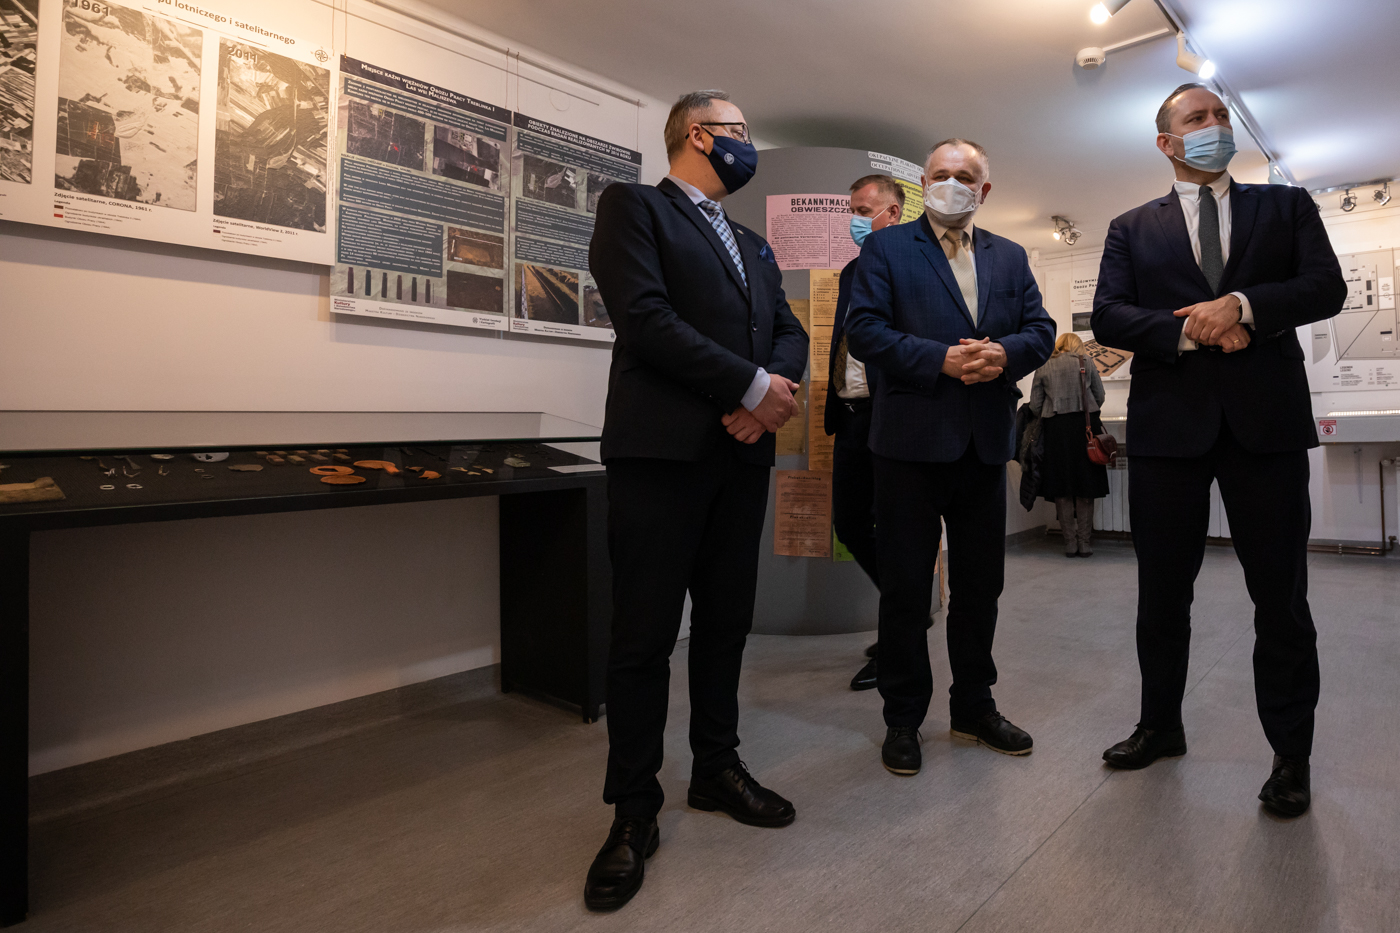 Wizyta przedstawicieli IPN w Muzeum Treblinka – 27 stycznia 2022. Fot. Mikołaj Bujak (IPN)